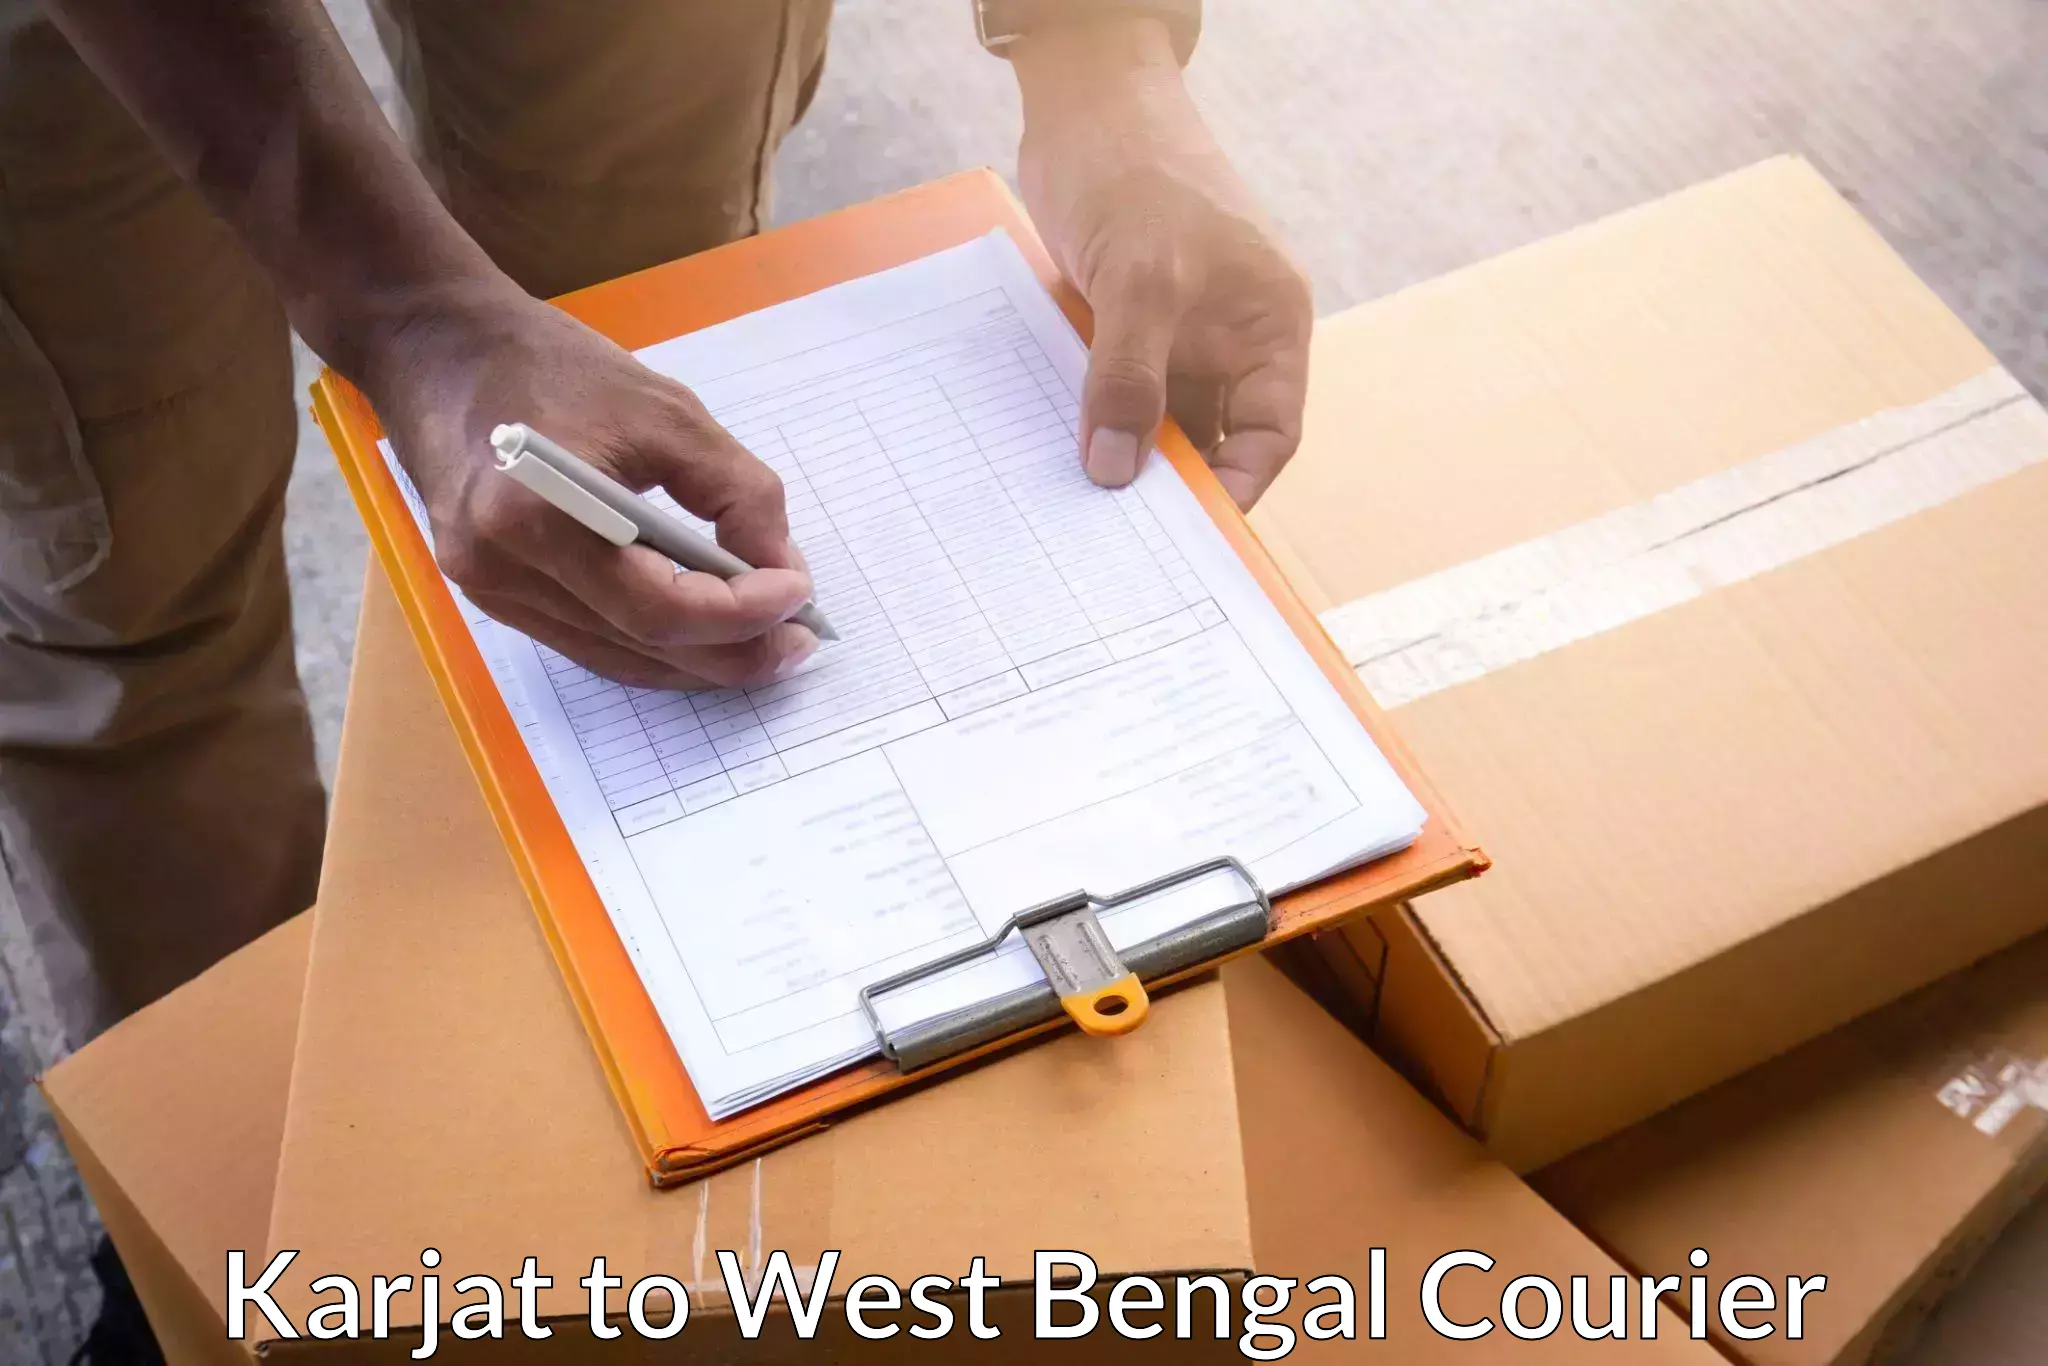 Comprehensive delivery network Karjat to Bandel